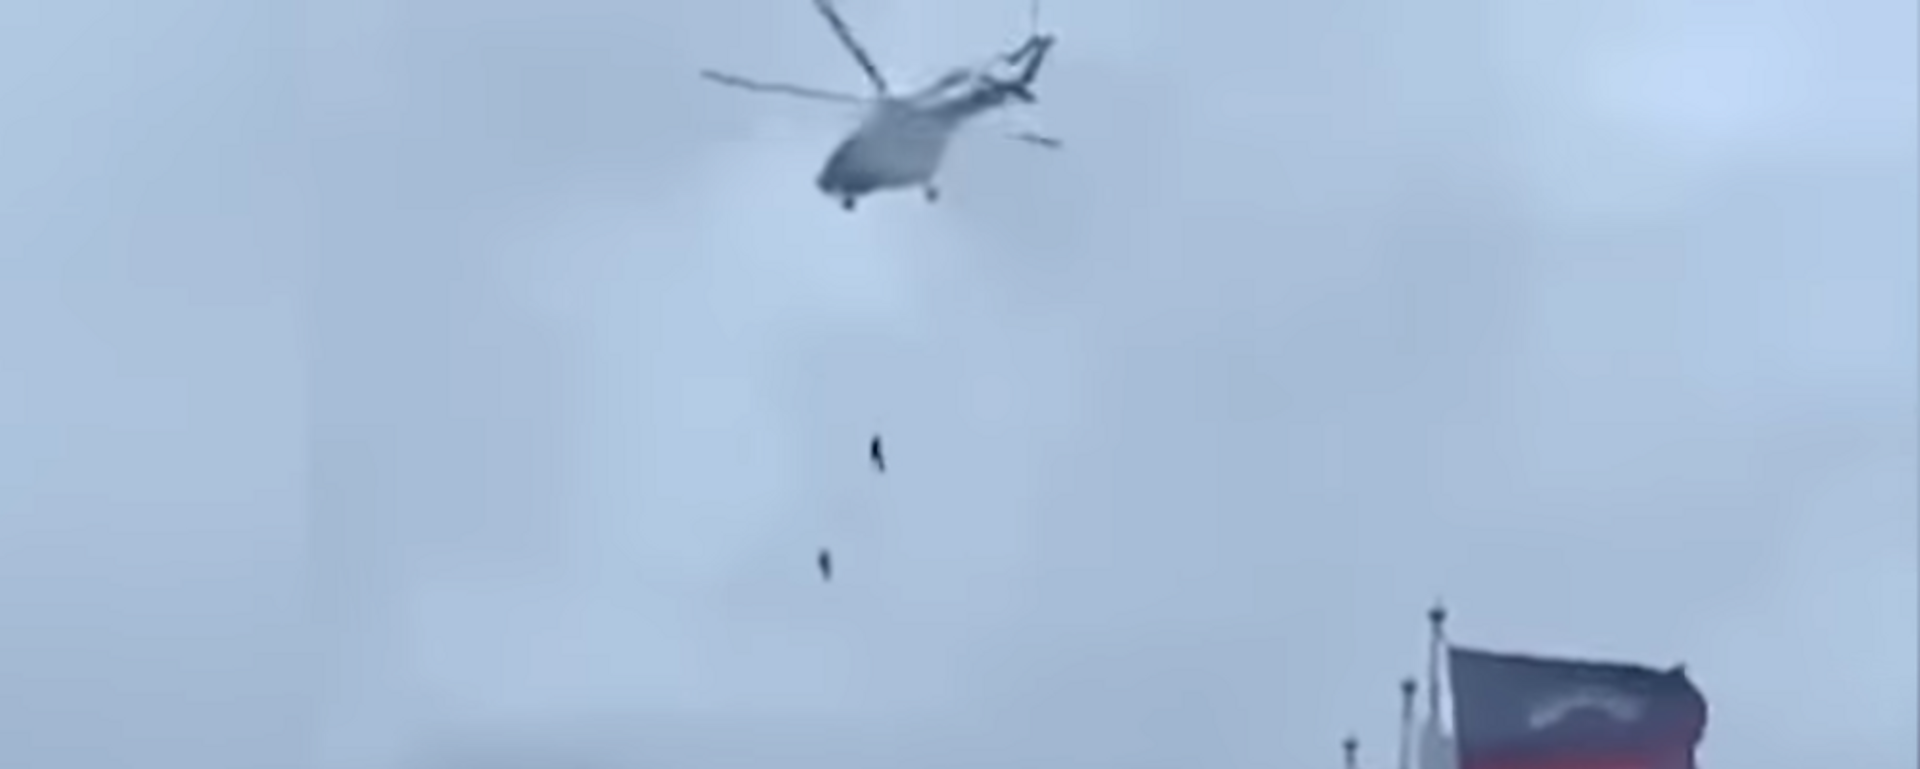 Vídeo: dos agentes de la Guardia Nacional rusa mueren al caer desde un helicóptero - Sputnik Mundo, 1920, 23.05.2021